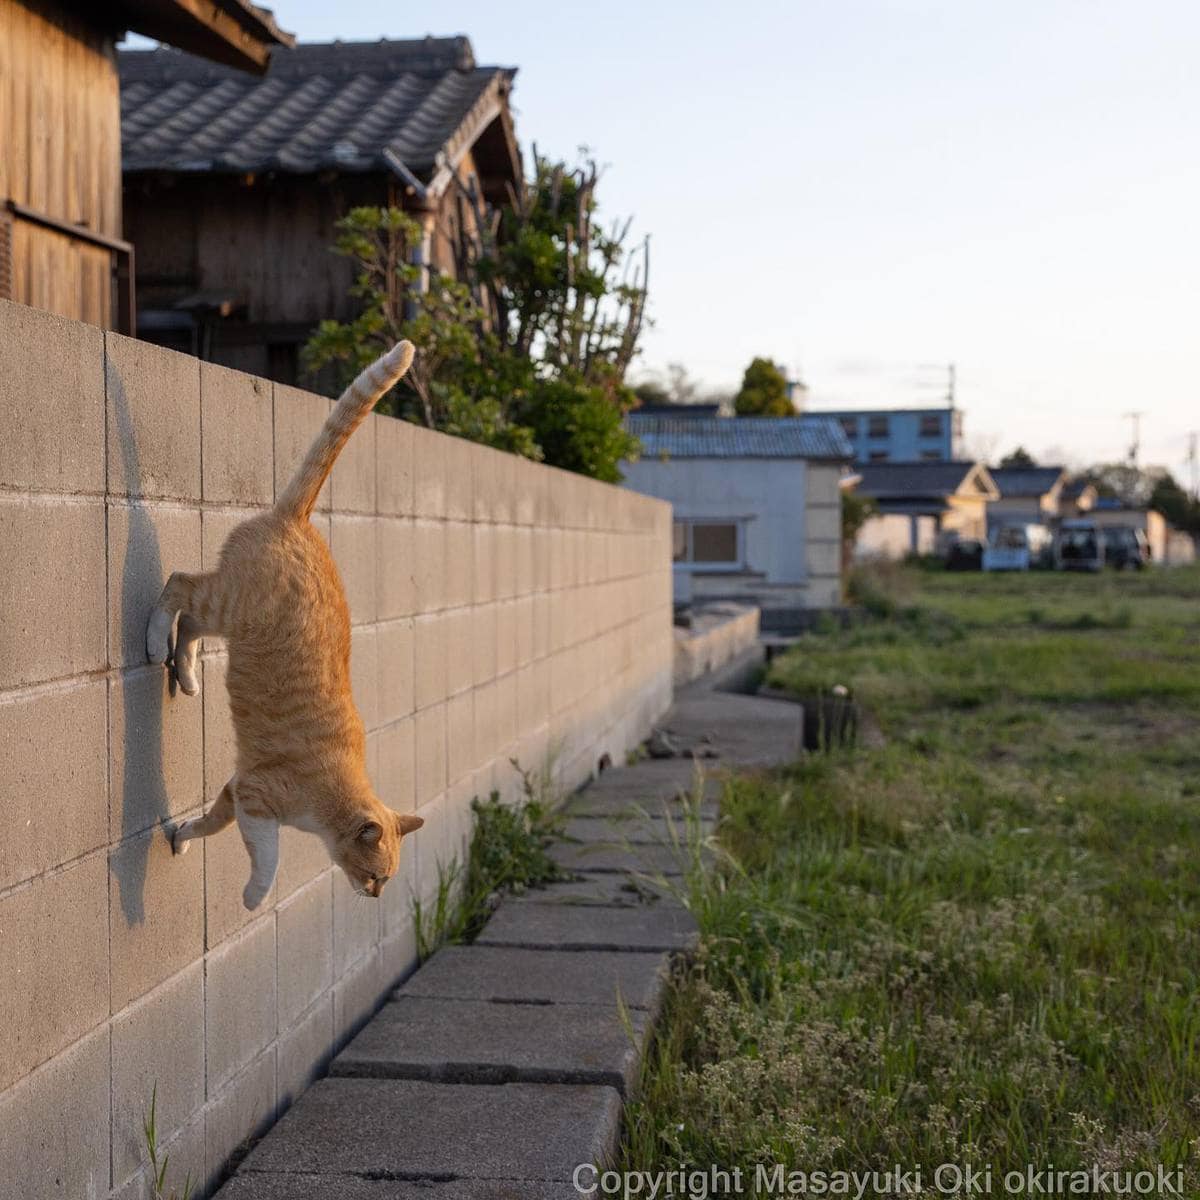 20 снимков уличных котов от японского фотографа, который как никто умеет запечатлевать харизму этих бродяг 62